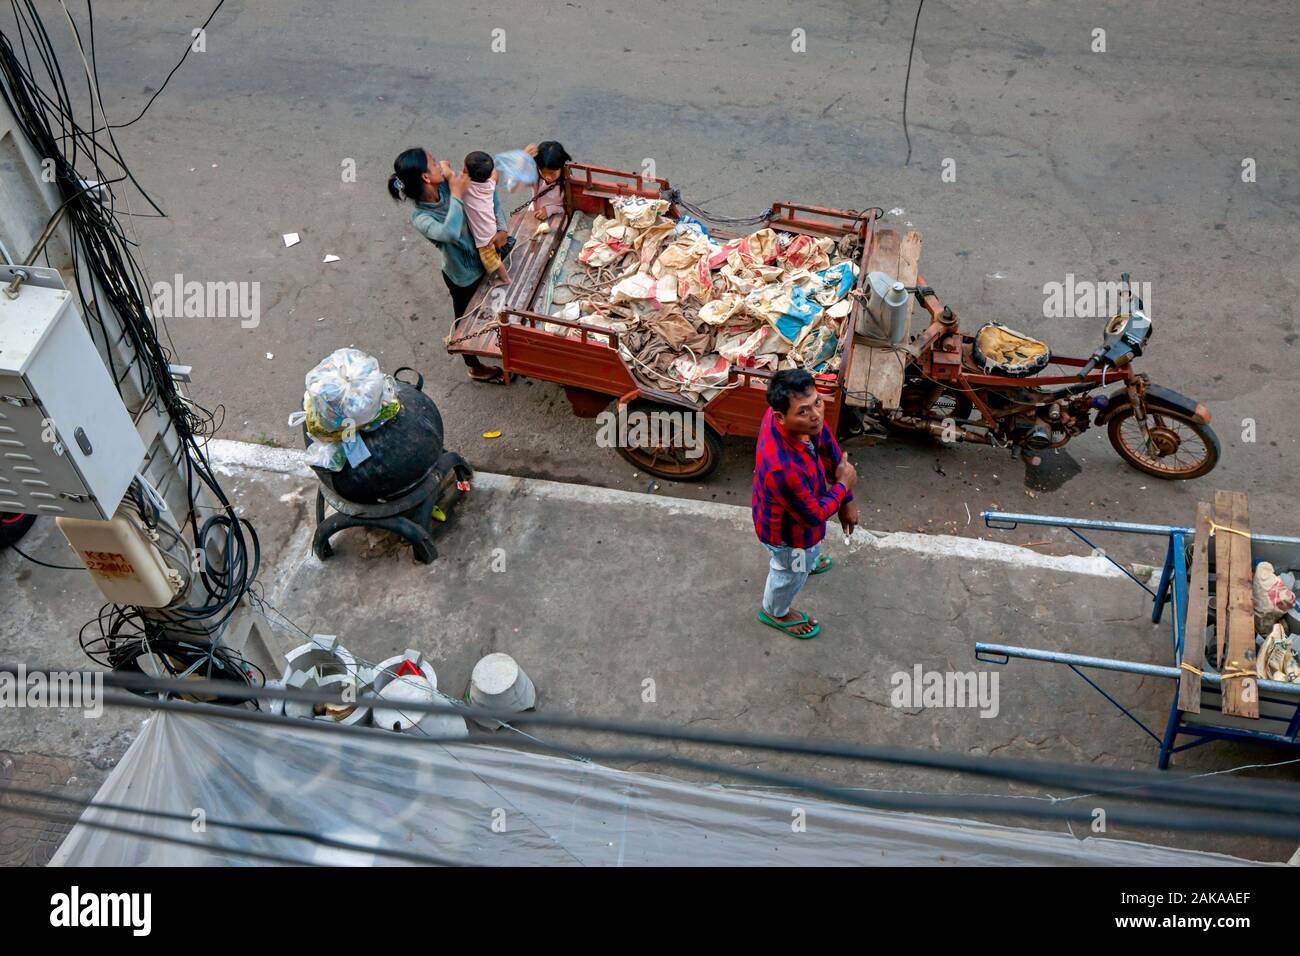 Un hogar pobre scavenger familia está reunida alrededor de un vehículo utilizado para el transporte de material reciclable en una calle de la ciudad de Kampong Cham, Camboya. Foto de stock